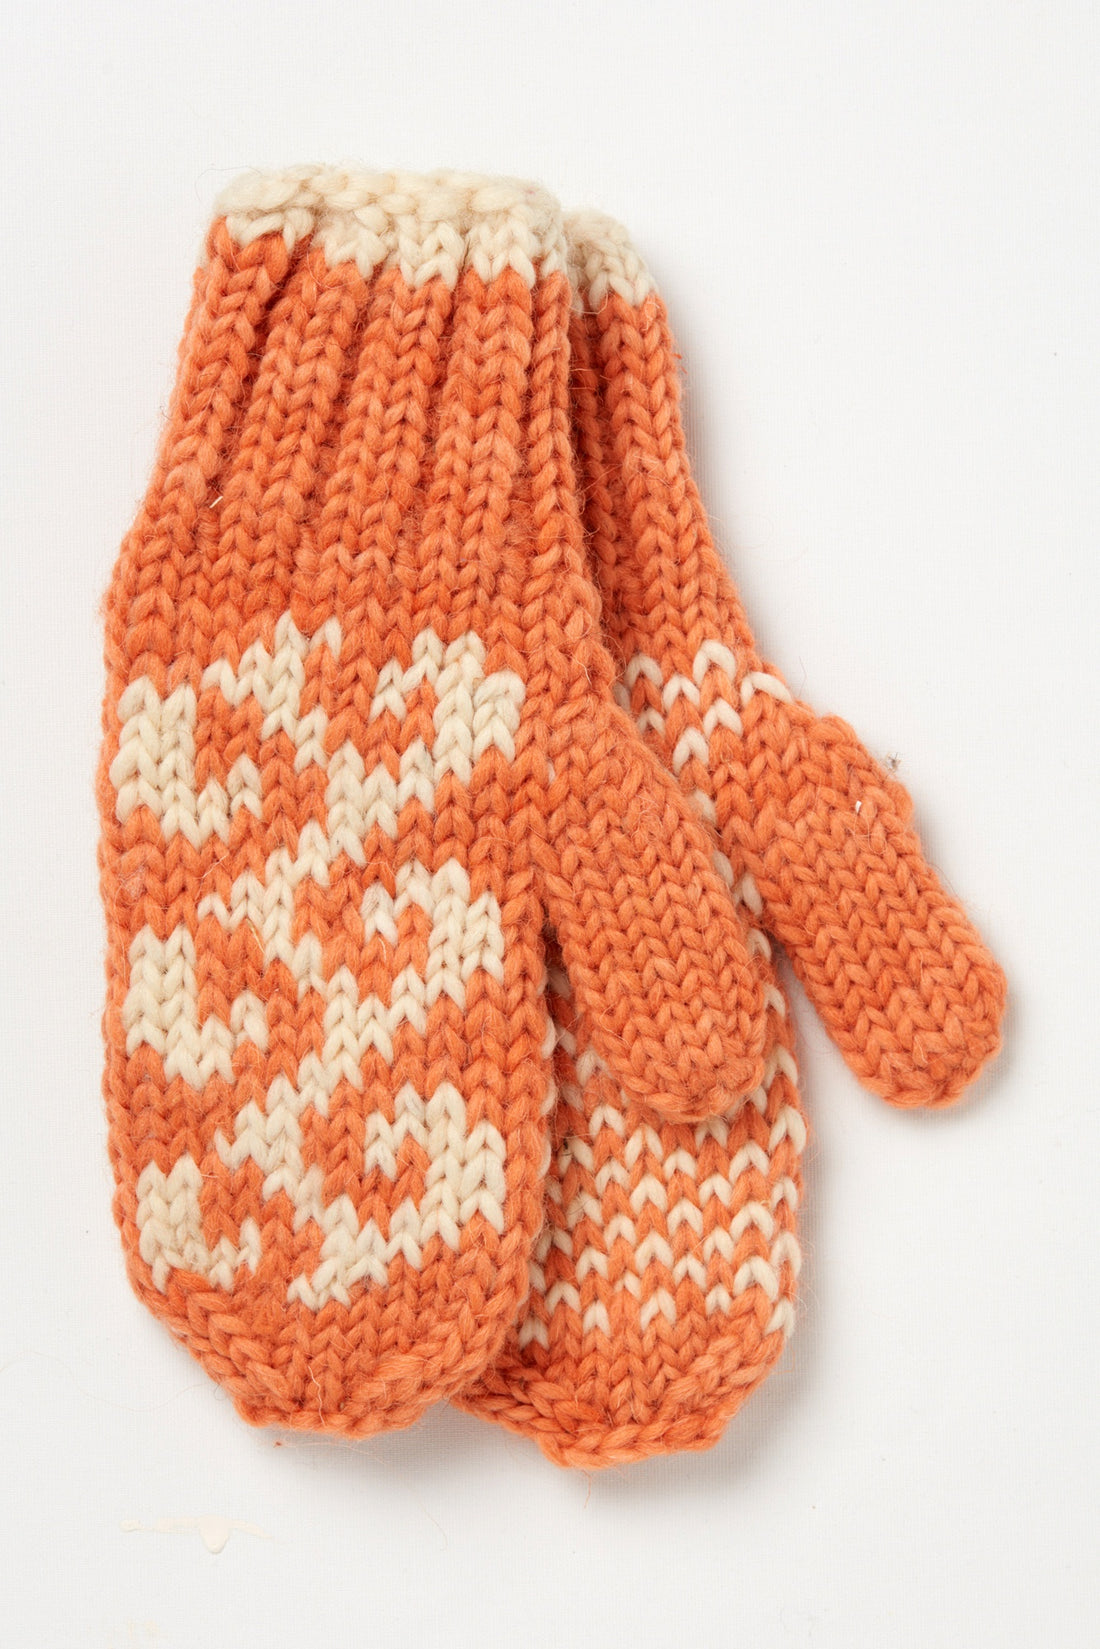 Stripe Wool Gloves